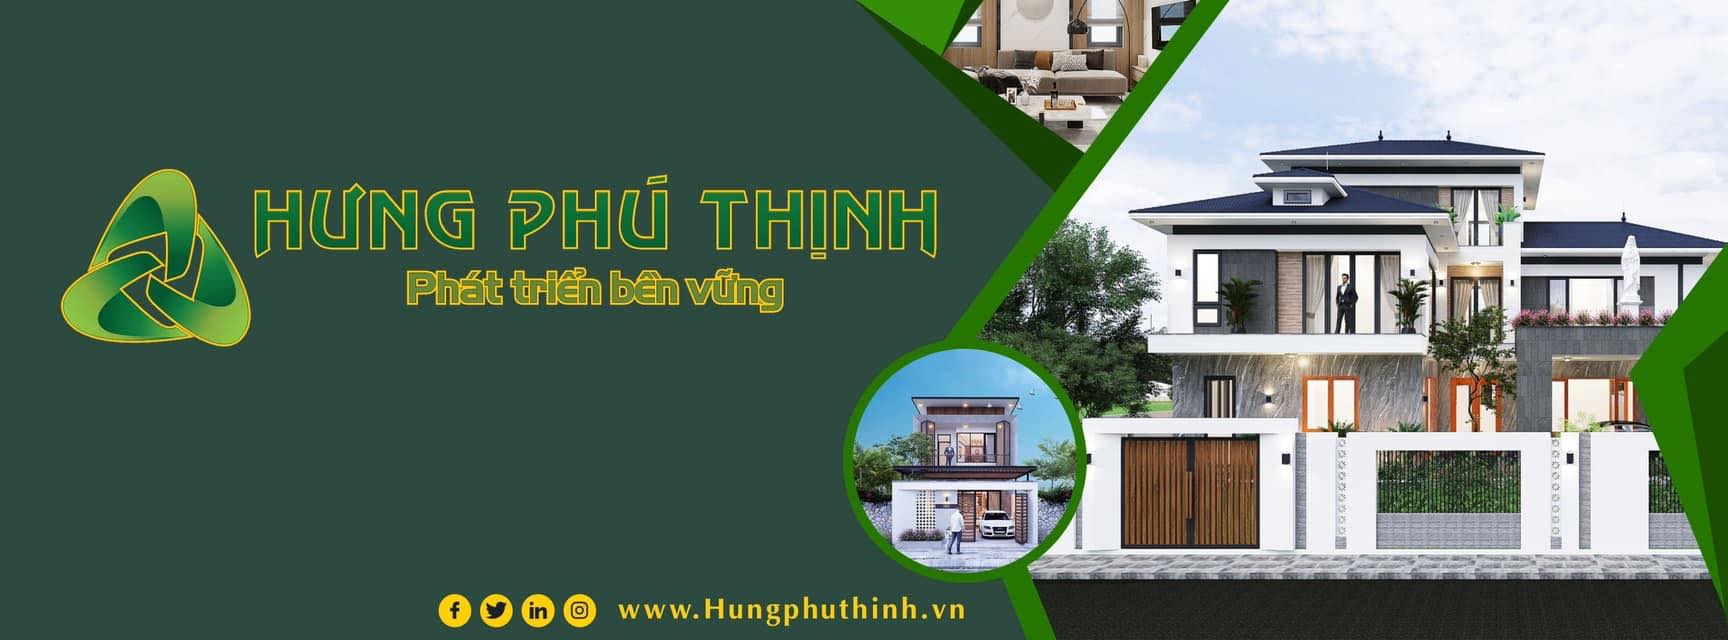 Hưng Phú Thịnh - Công ty xây dựng tại HCM được khách hàng đánh giá cao